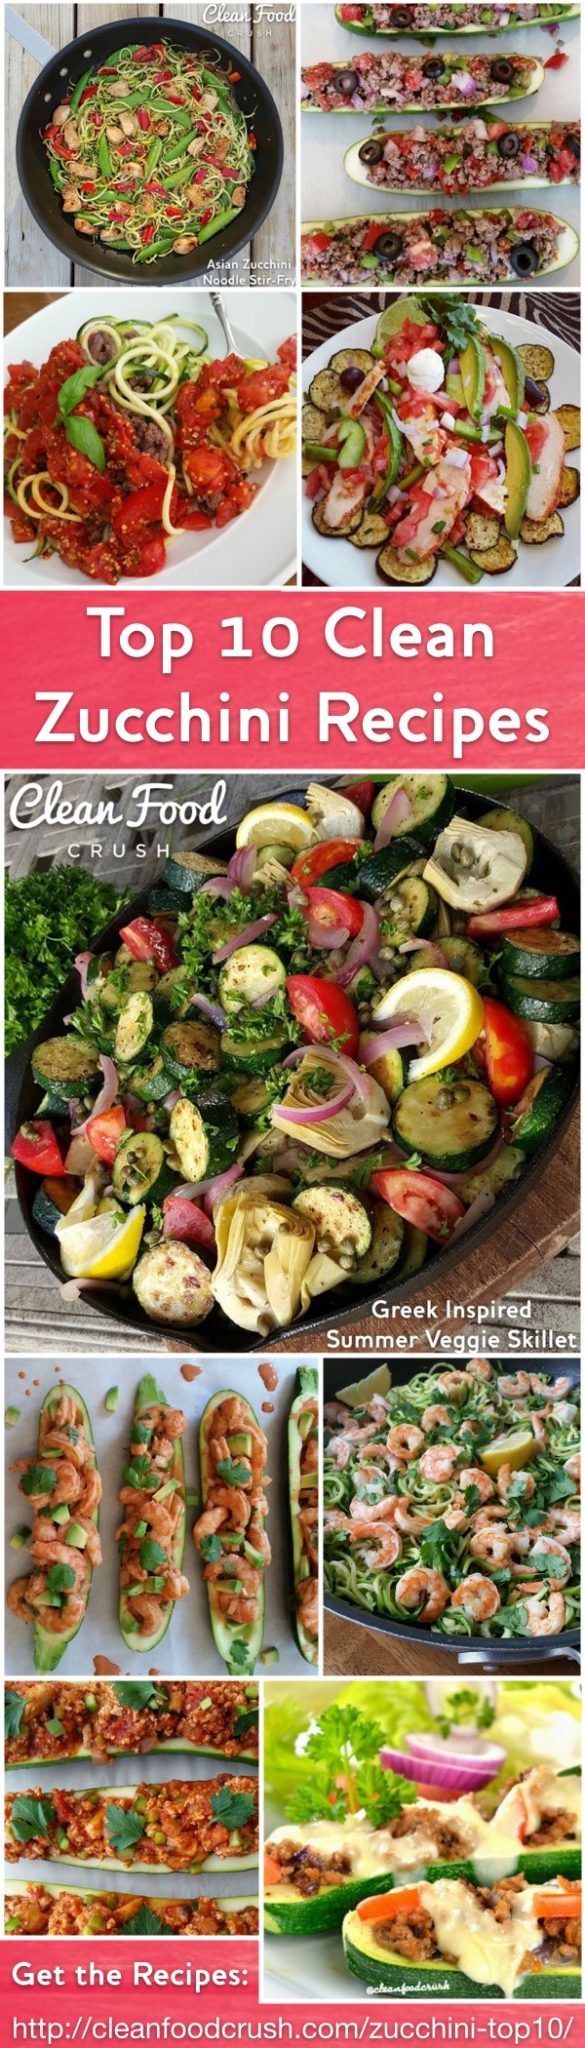 Clean Eating Zucchini Palooza Top 10 Zucchini Recipes https://cleanfoodcrush.com/zucchini-top10